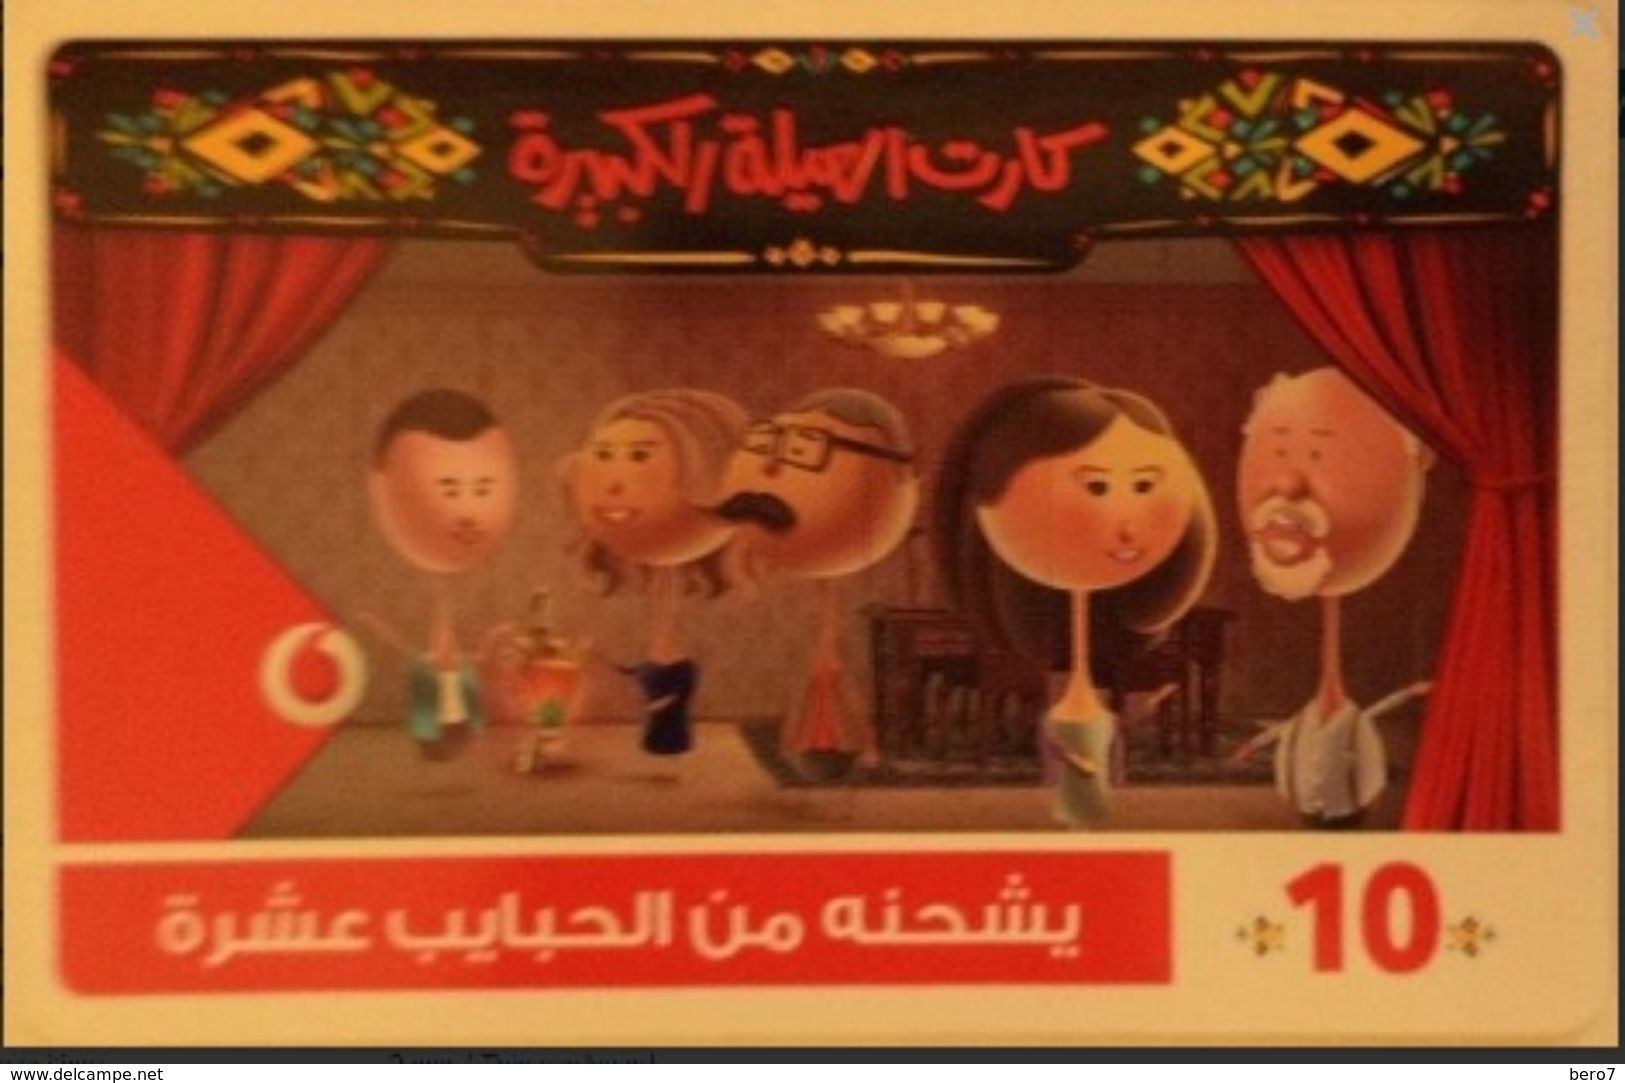 EGYPT -Family Card 10 L.E, Vodafone , [used] (Egypte) (Egitto) (Ägypten) (Egipto) (Egypten - Egipto